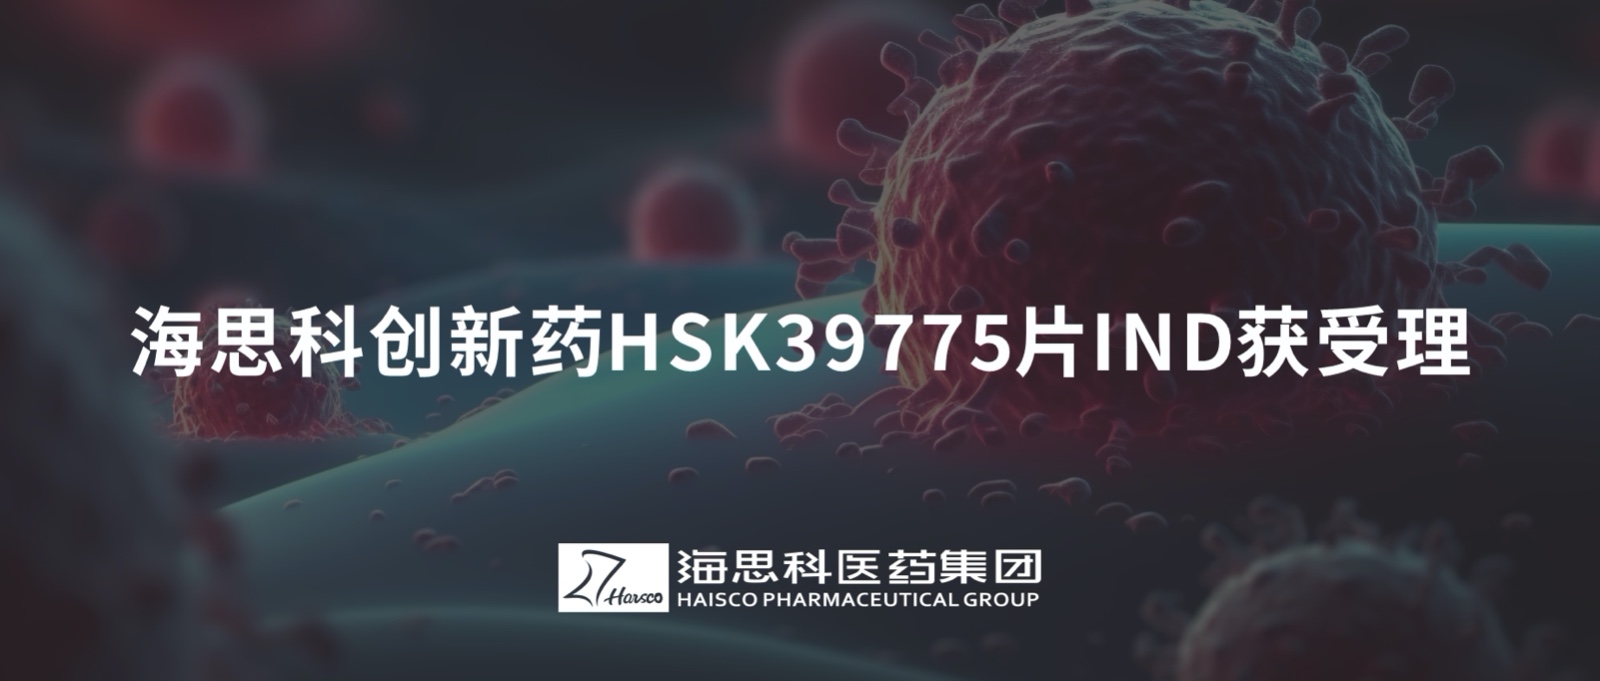 凯发k8国际首页登录创新药HSK39775片IND获受理